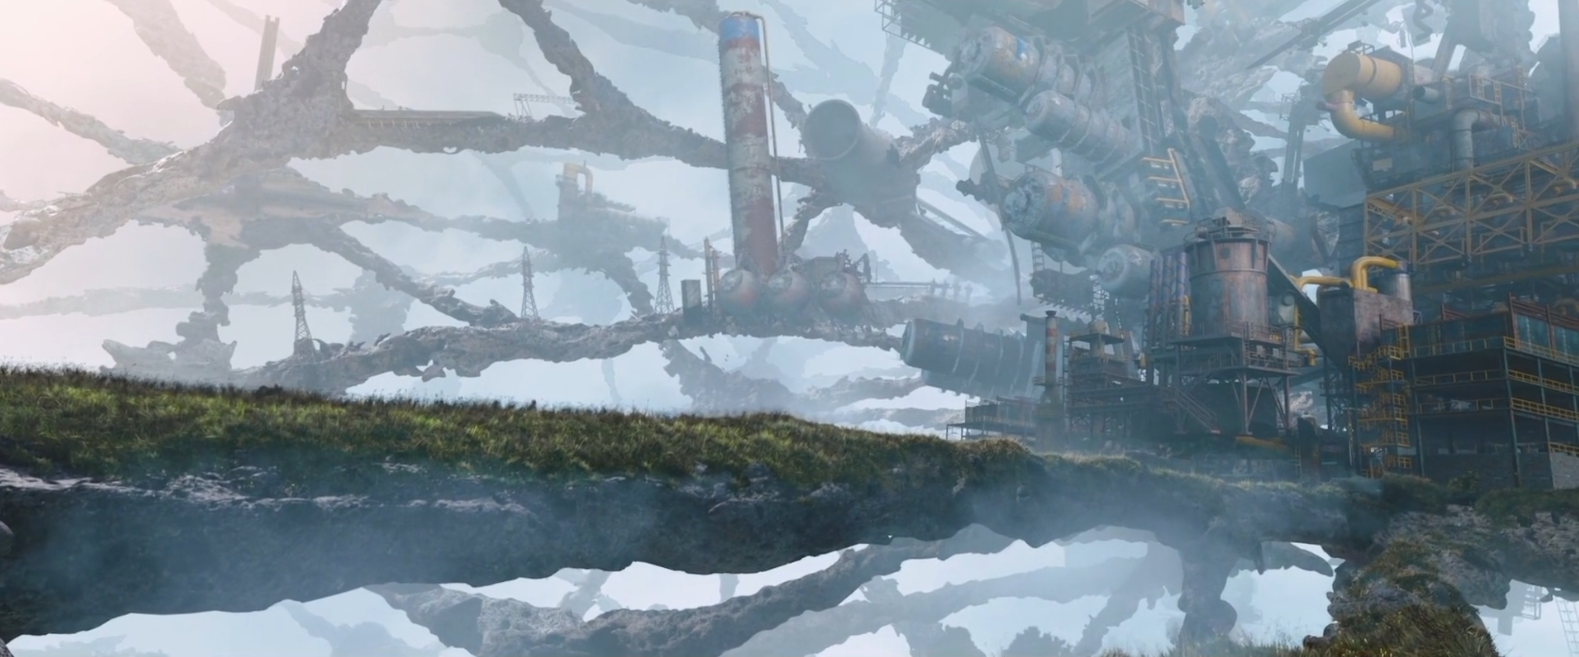 《异界》:俄罗斯超火爆科幻大片 堪比盗梦空间的震撼特效